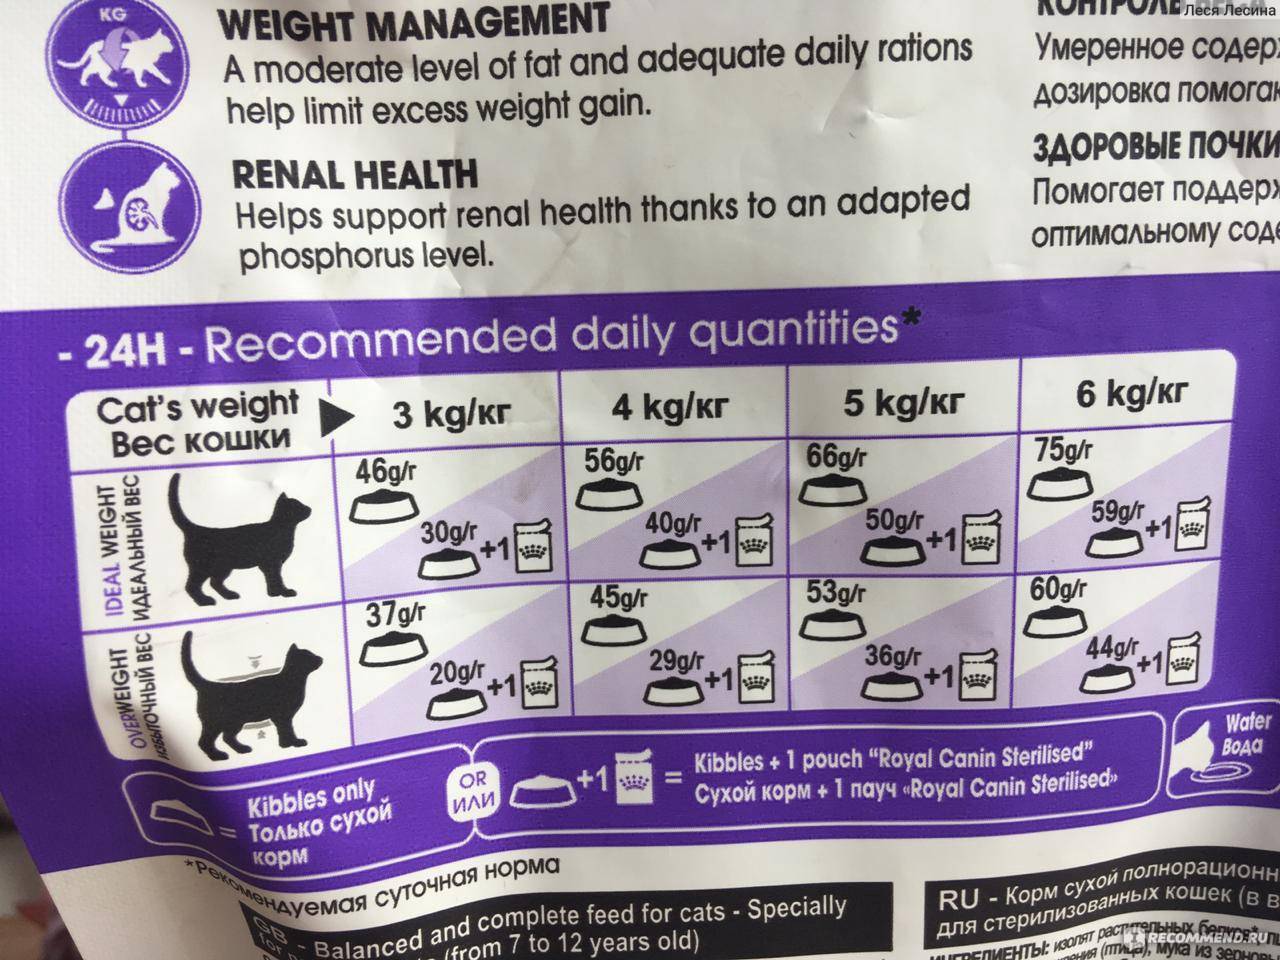 Чем лучше кормить больную кошку  виды кормов и рекомендации